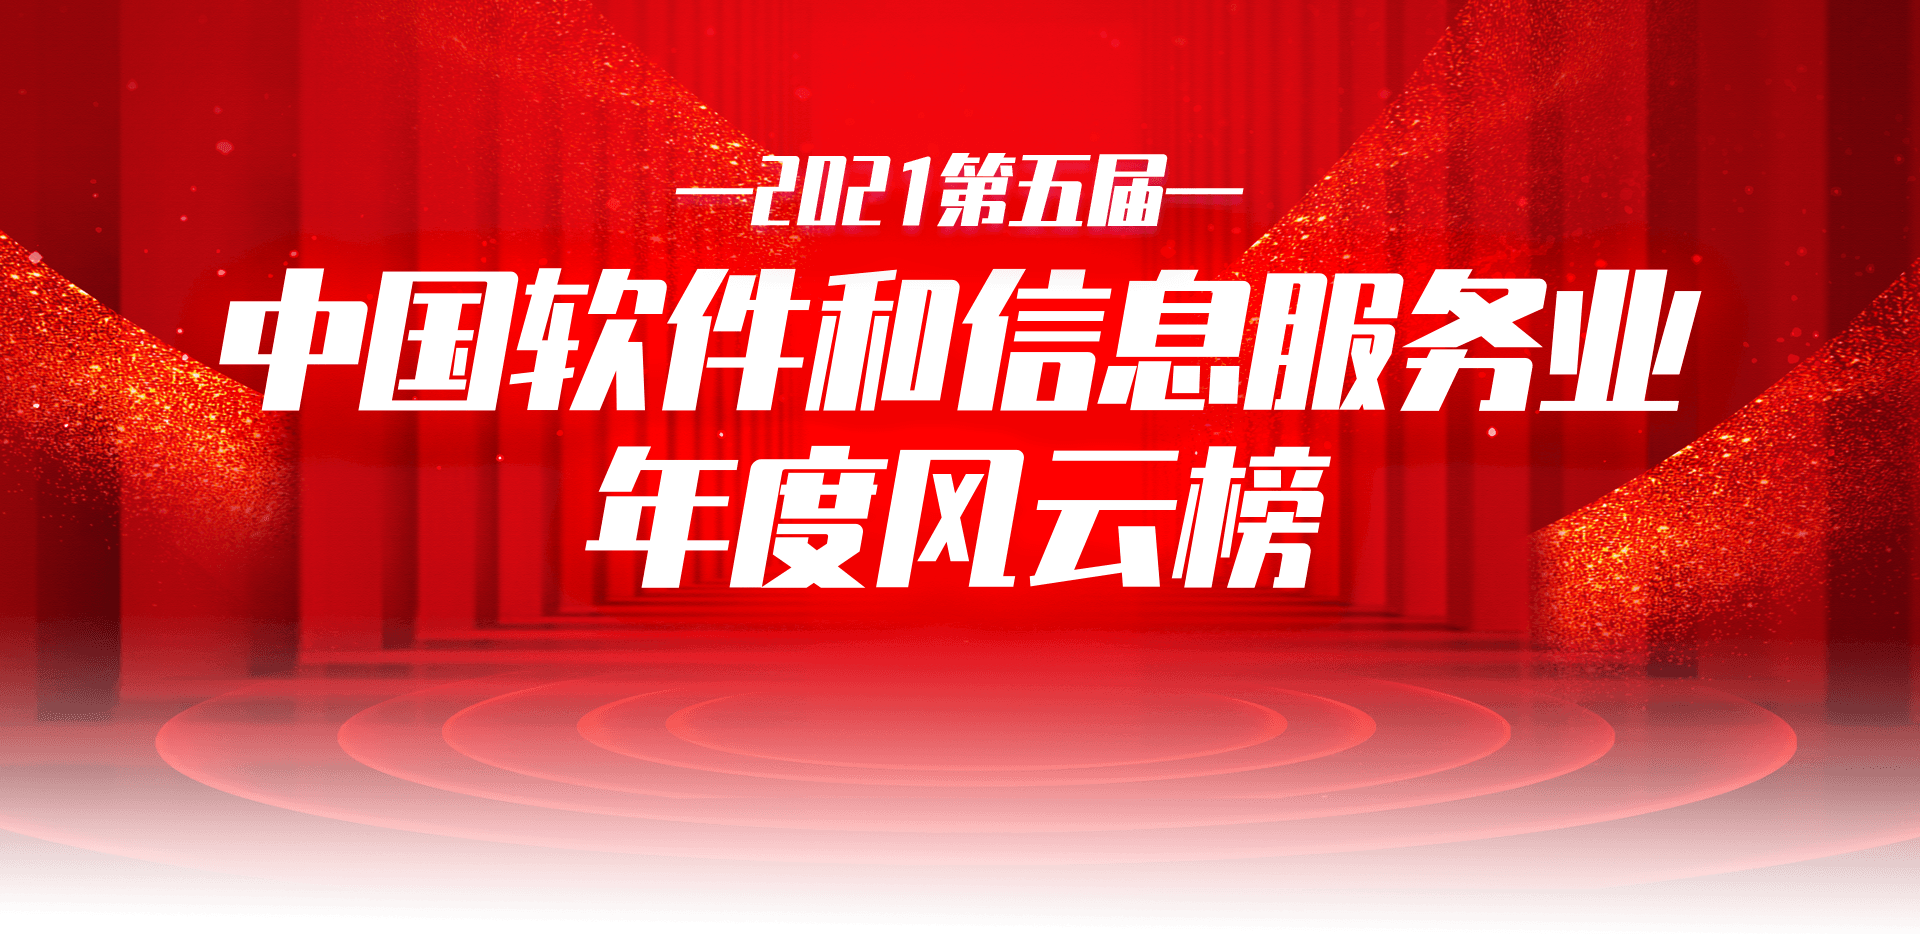 2021第五届中国软件和信息服务业年度风云榜